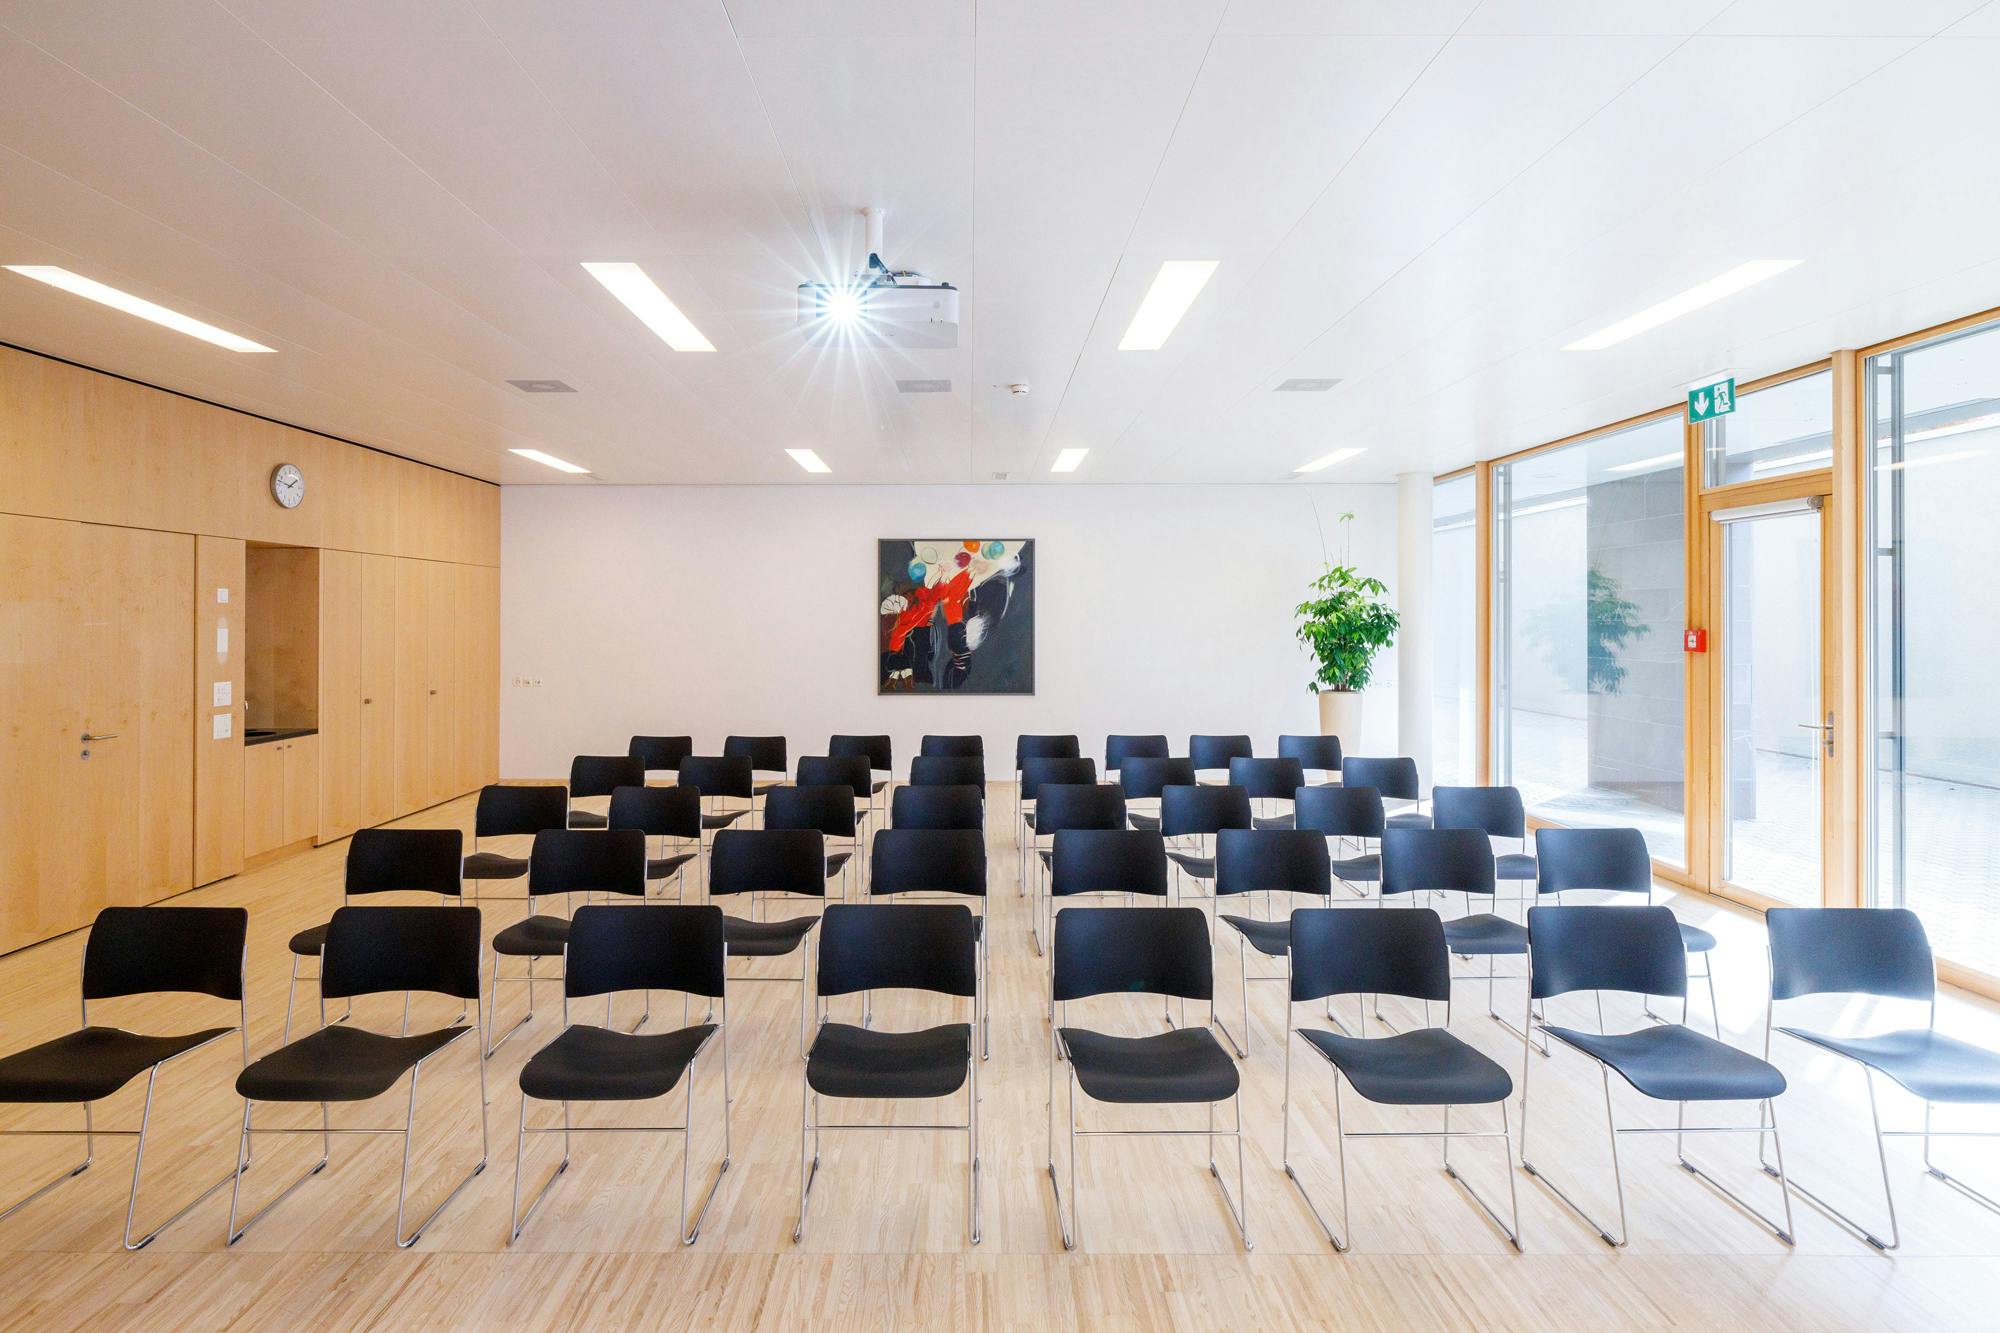 Konferenzraum mit Reihen von schwarzen Stühlen und einem abstrakten Gemälde an der Wand.